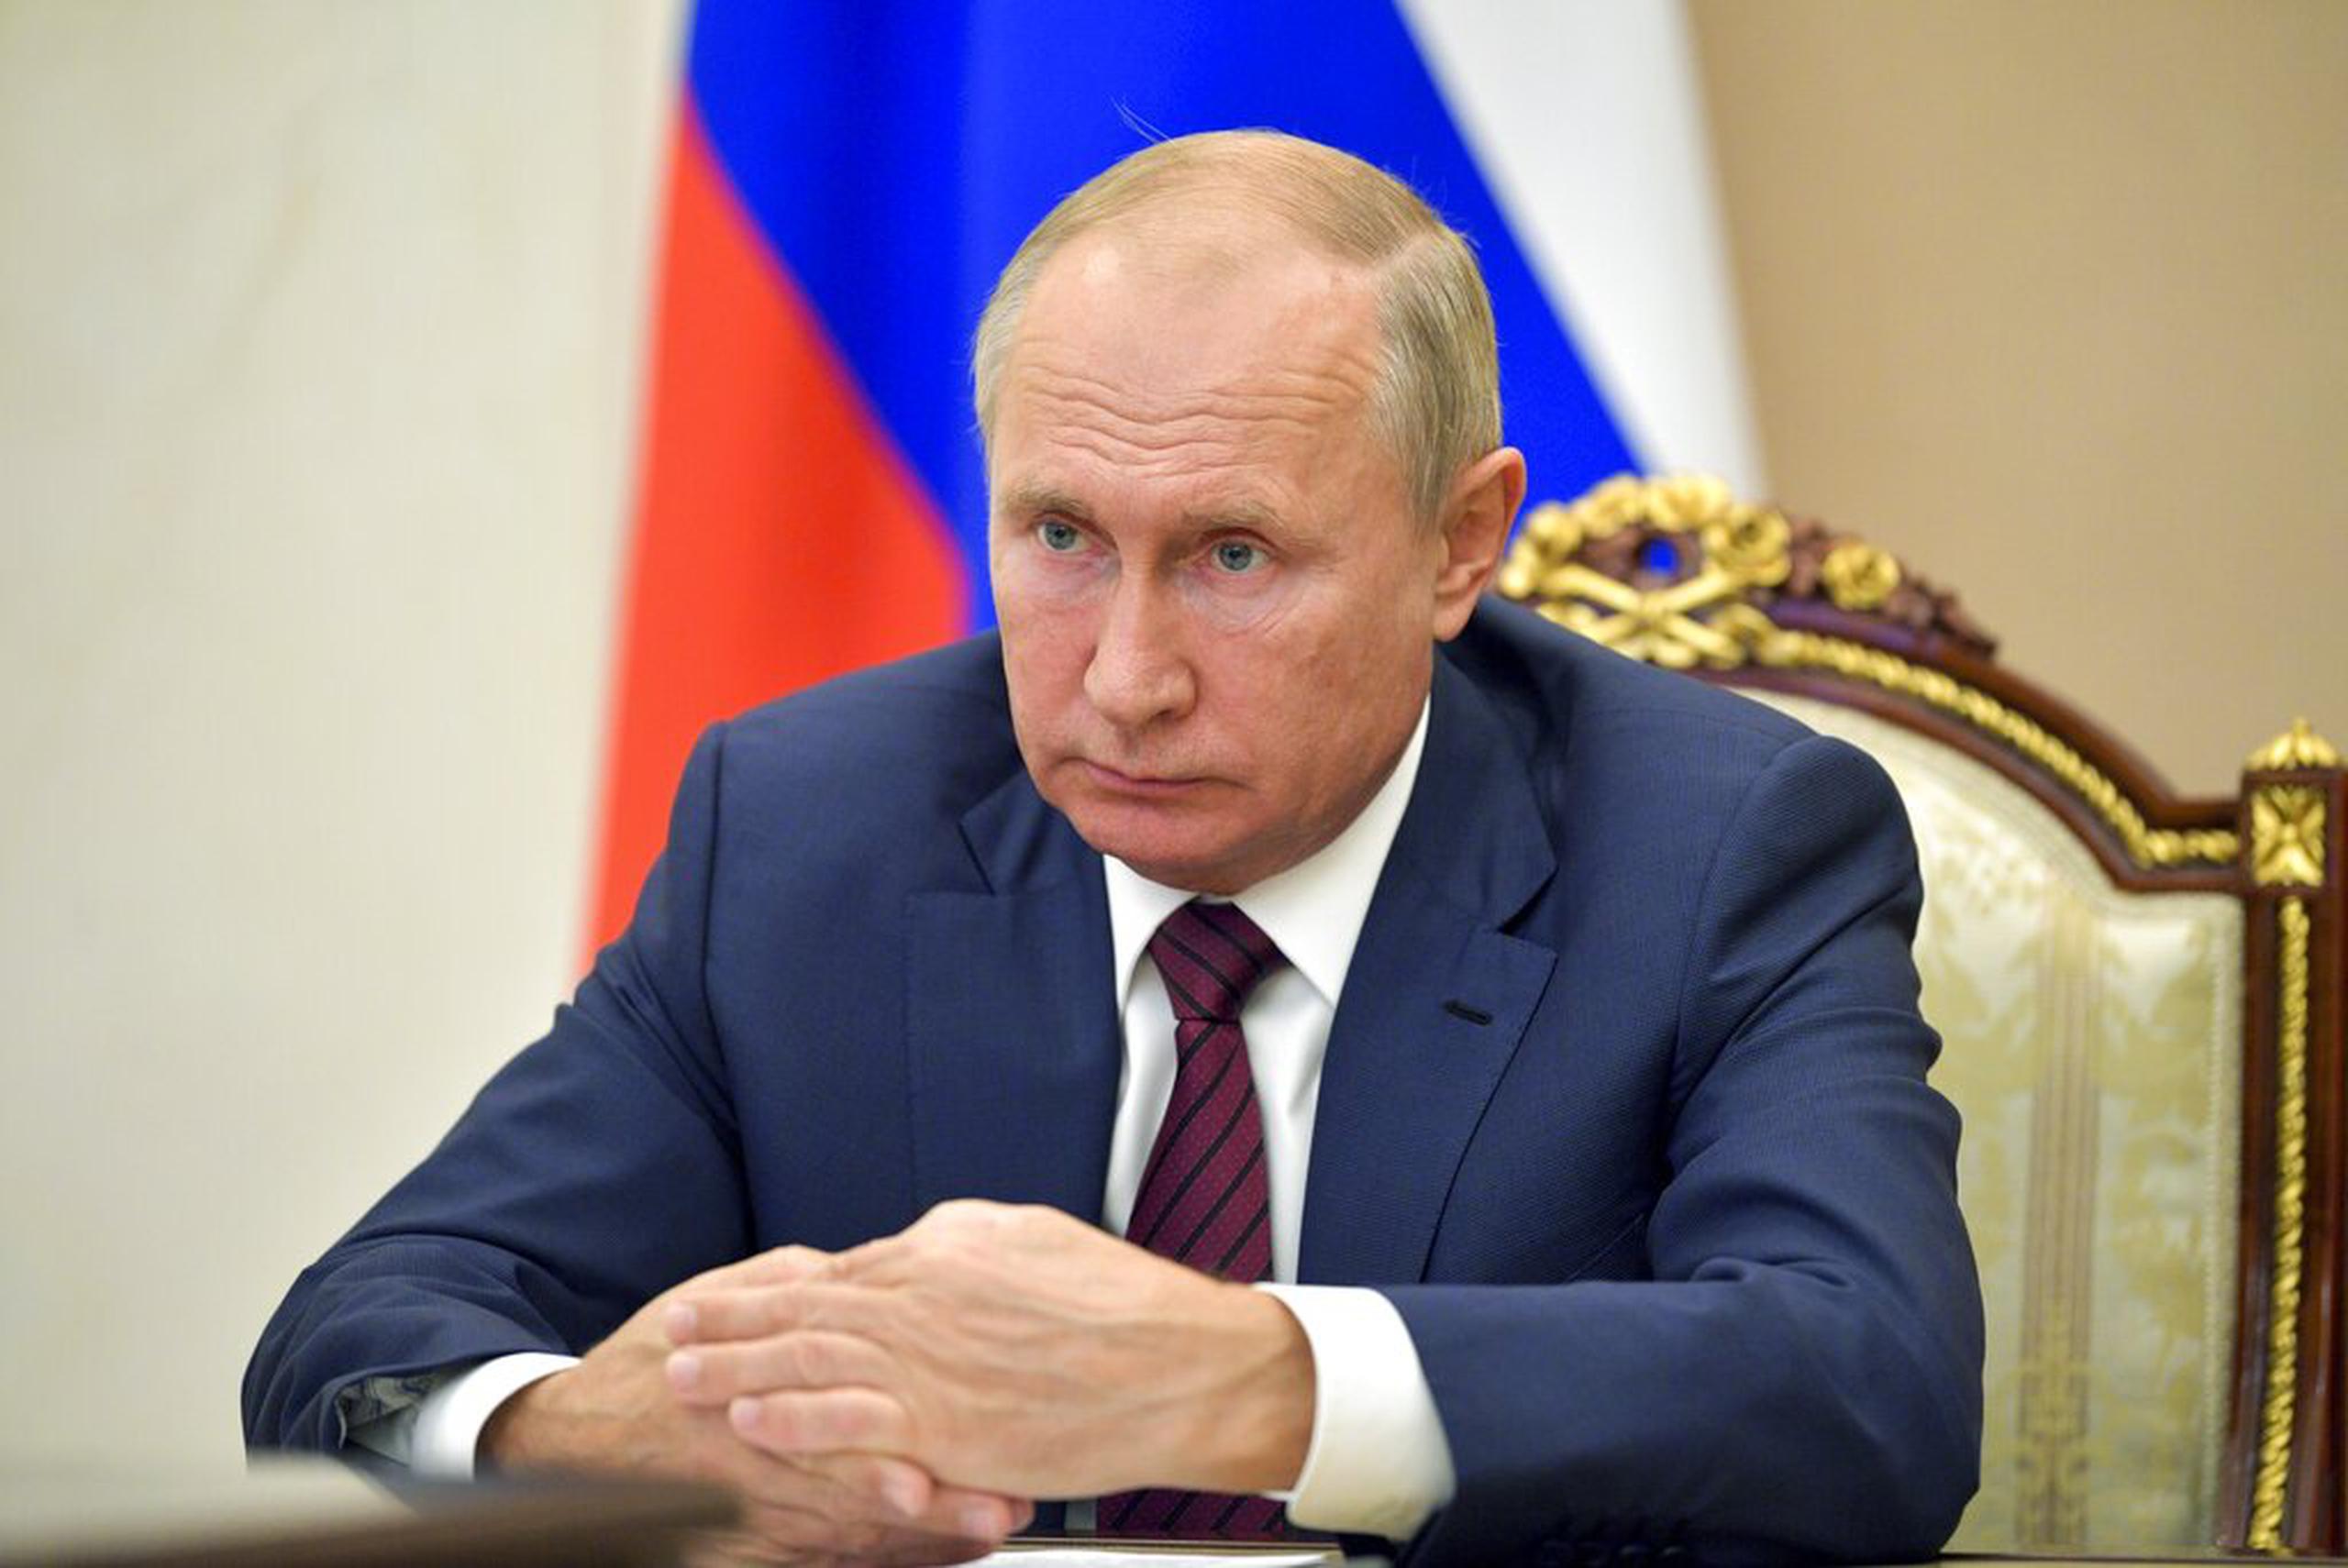 Putin dijo el miércoles que apoya la propuesta del gabinete de introducir el período no laborable a partir del 30 de octubre y ampliarlo a la semana siguiente, cuando cuatro de los siete días ya son feriados estatales.